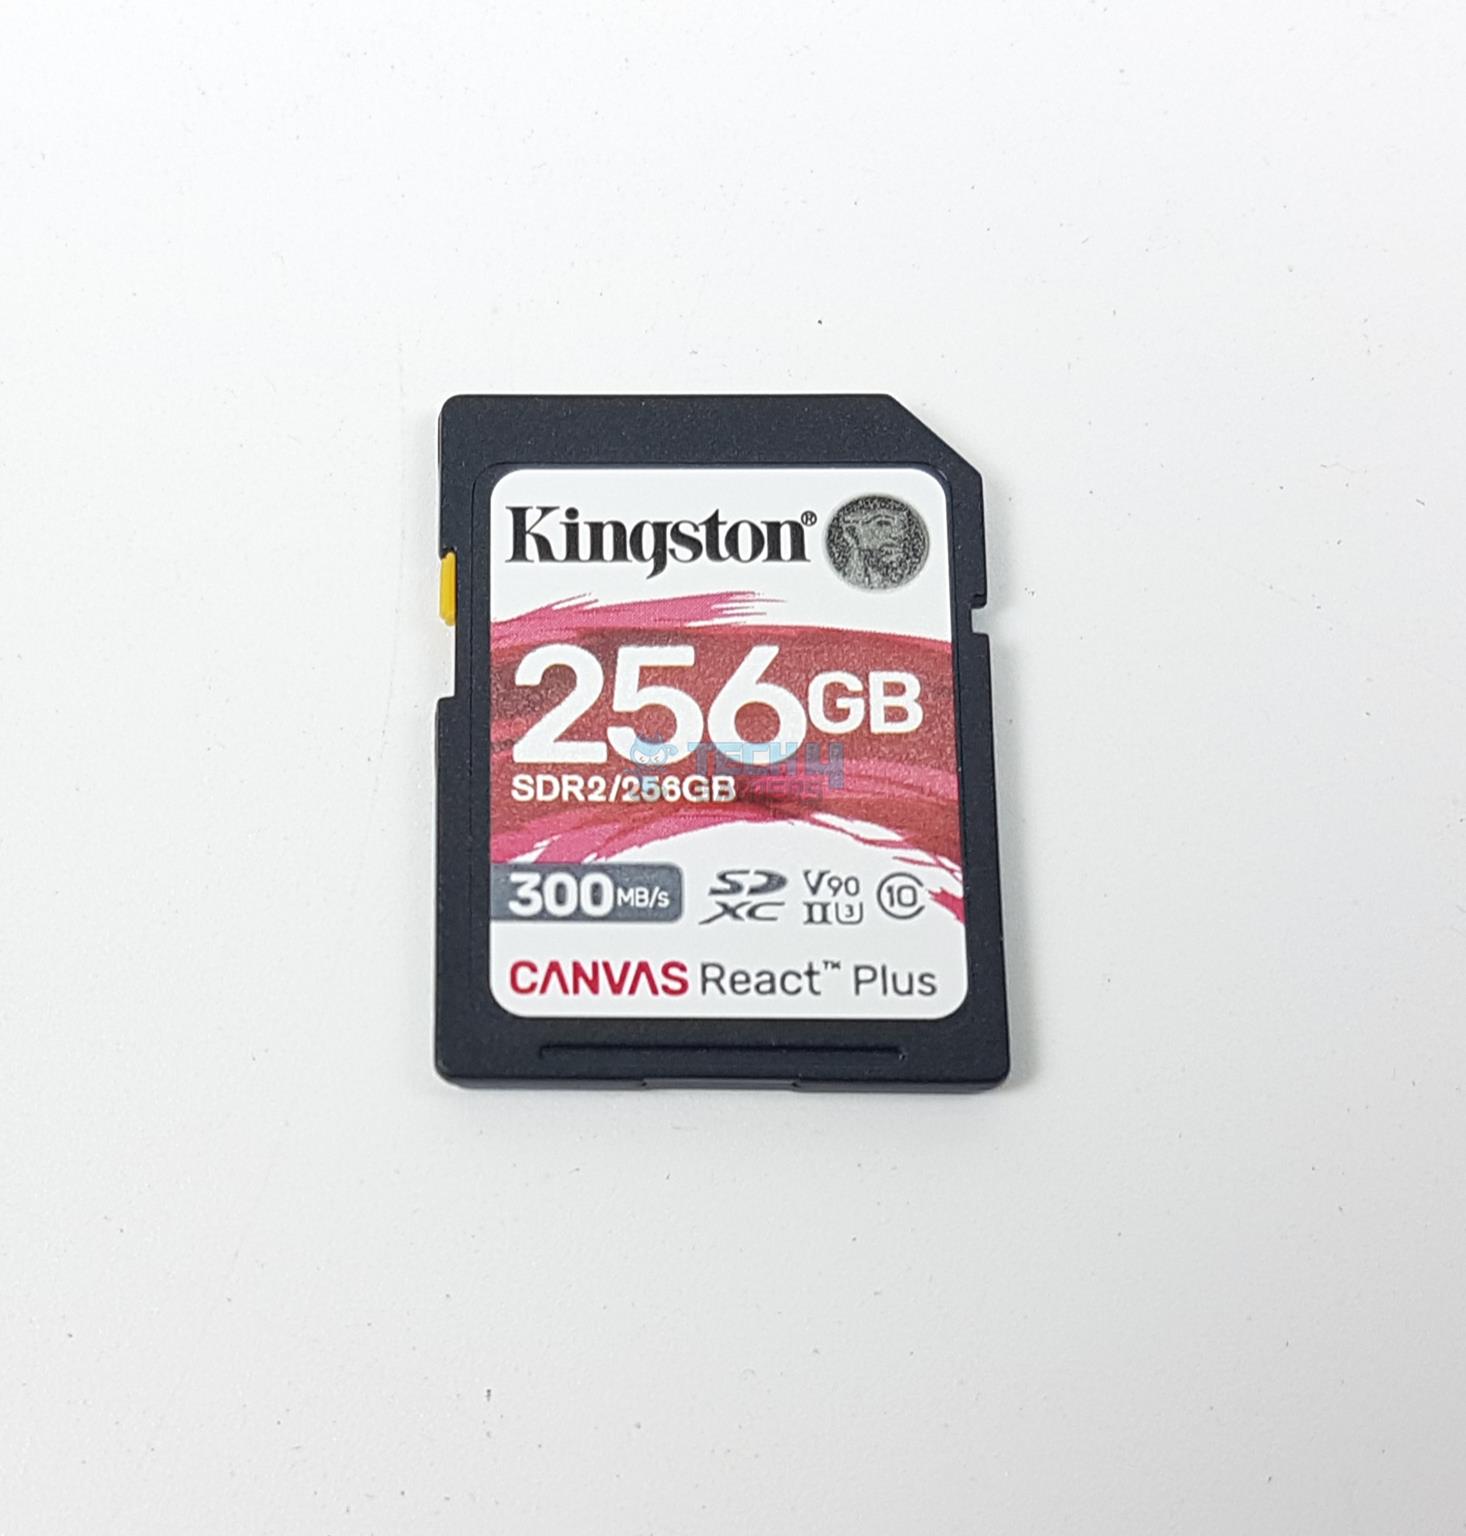 Kingston Workflow SD Reader — Kingston Canvas React Plus SD Card Top